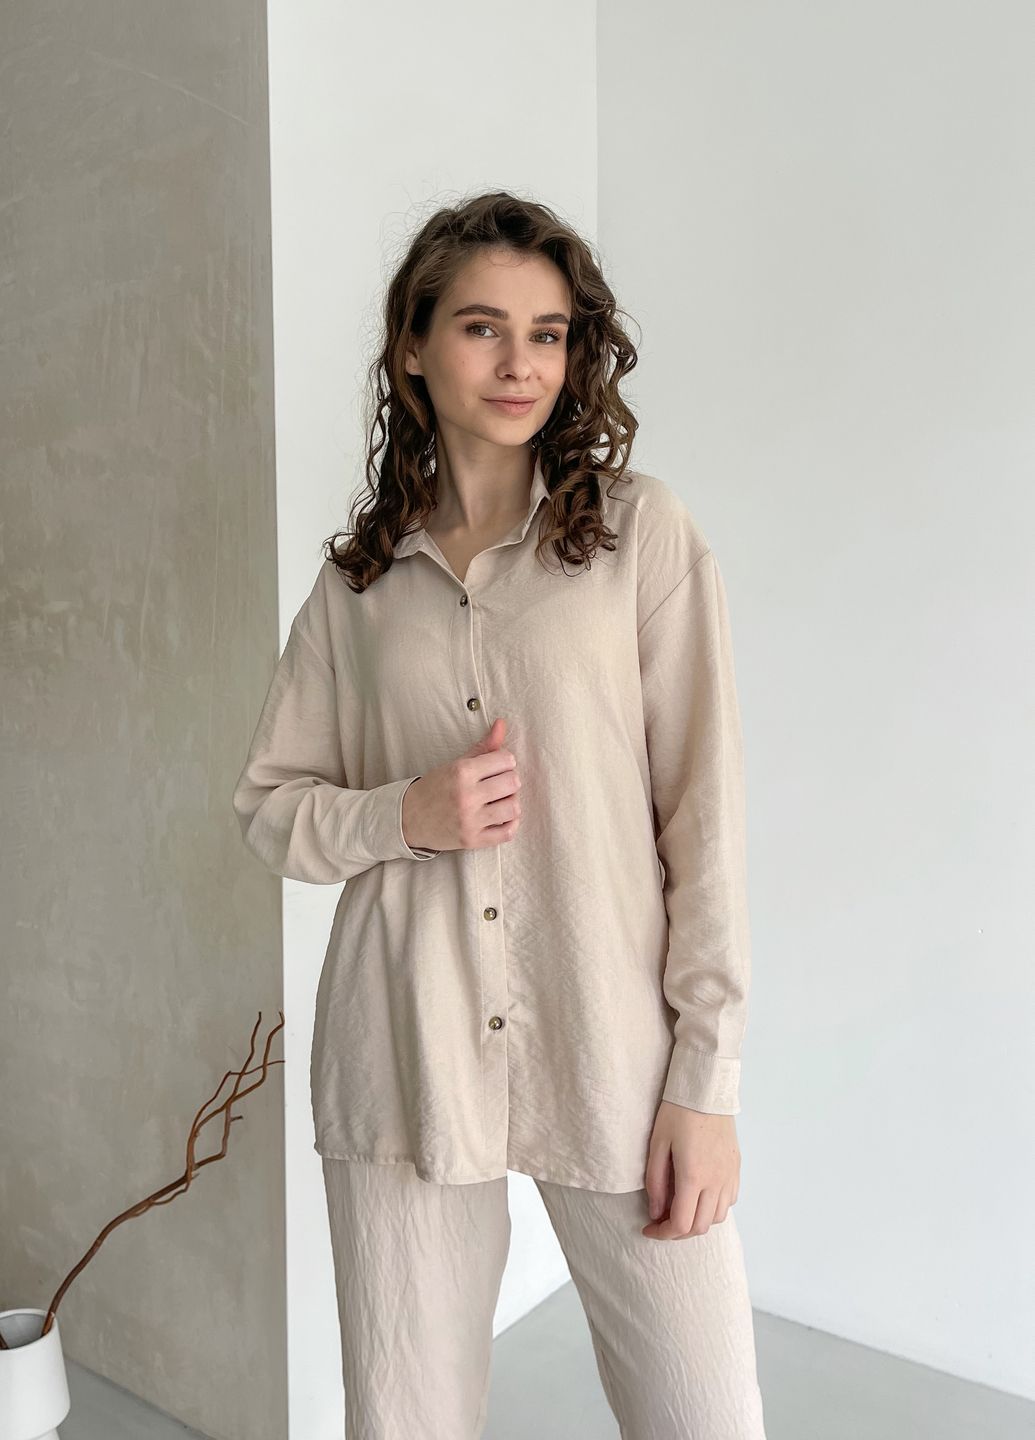 Купить Рубашка женская с длинным рукавом бежевого цвета из льна Merlini Беллуно 200000243, размер 46-48 в интернет-магазине